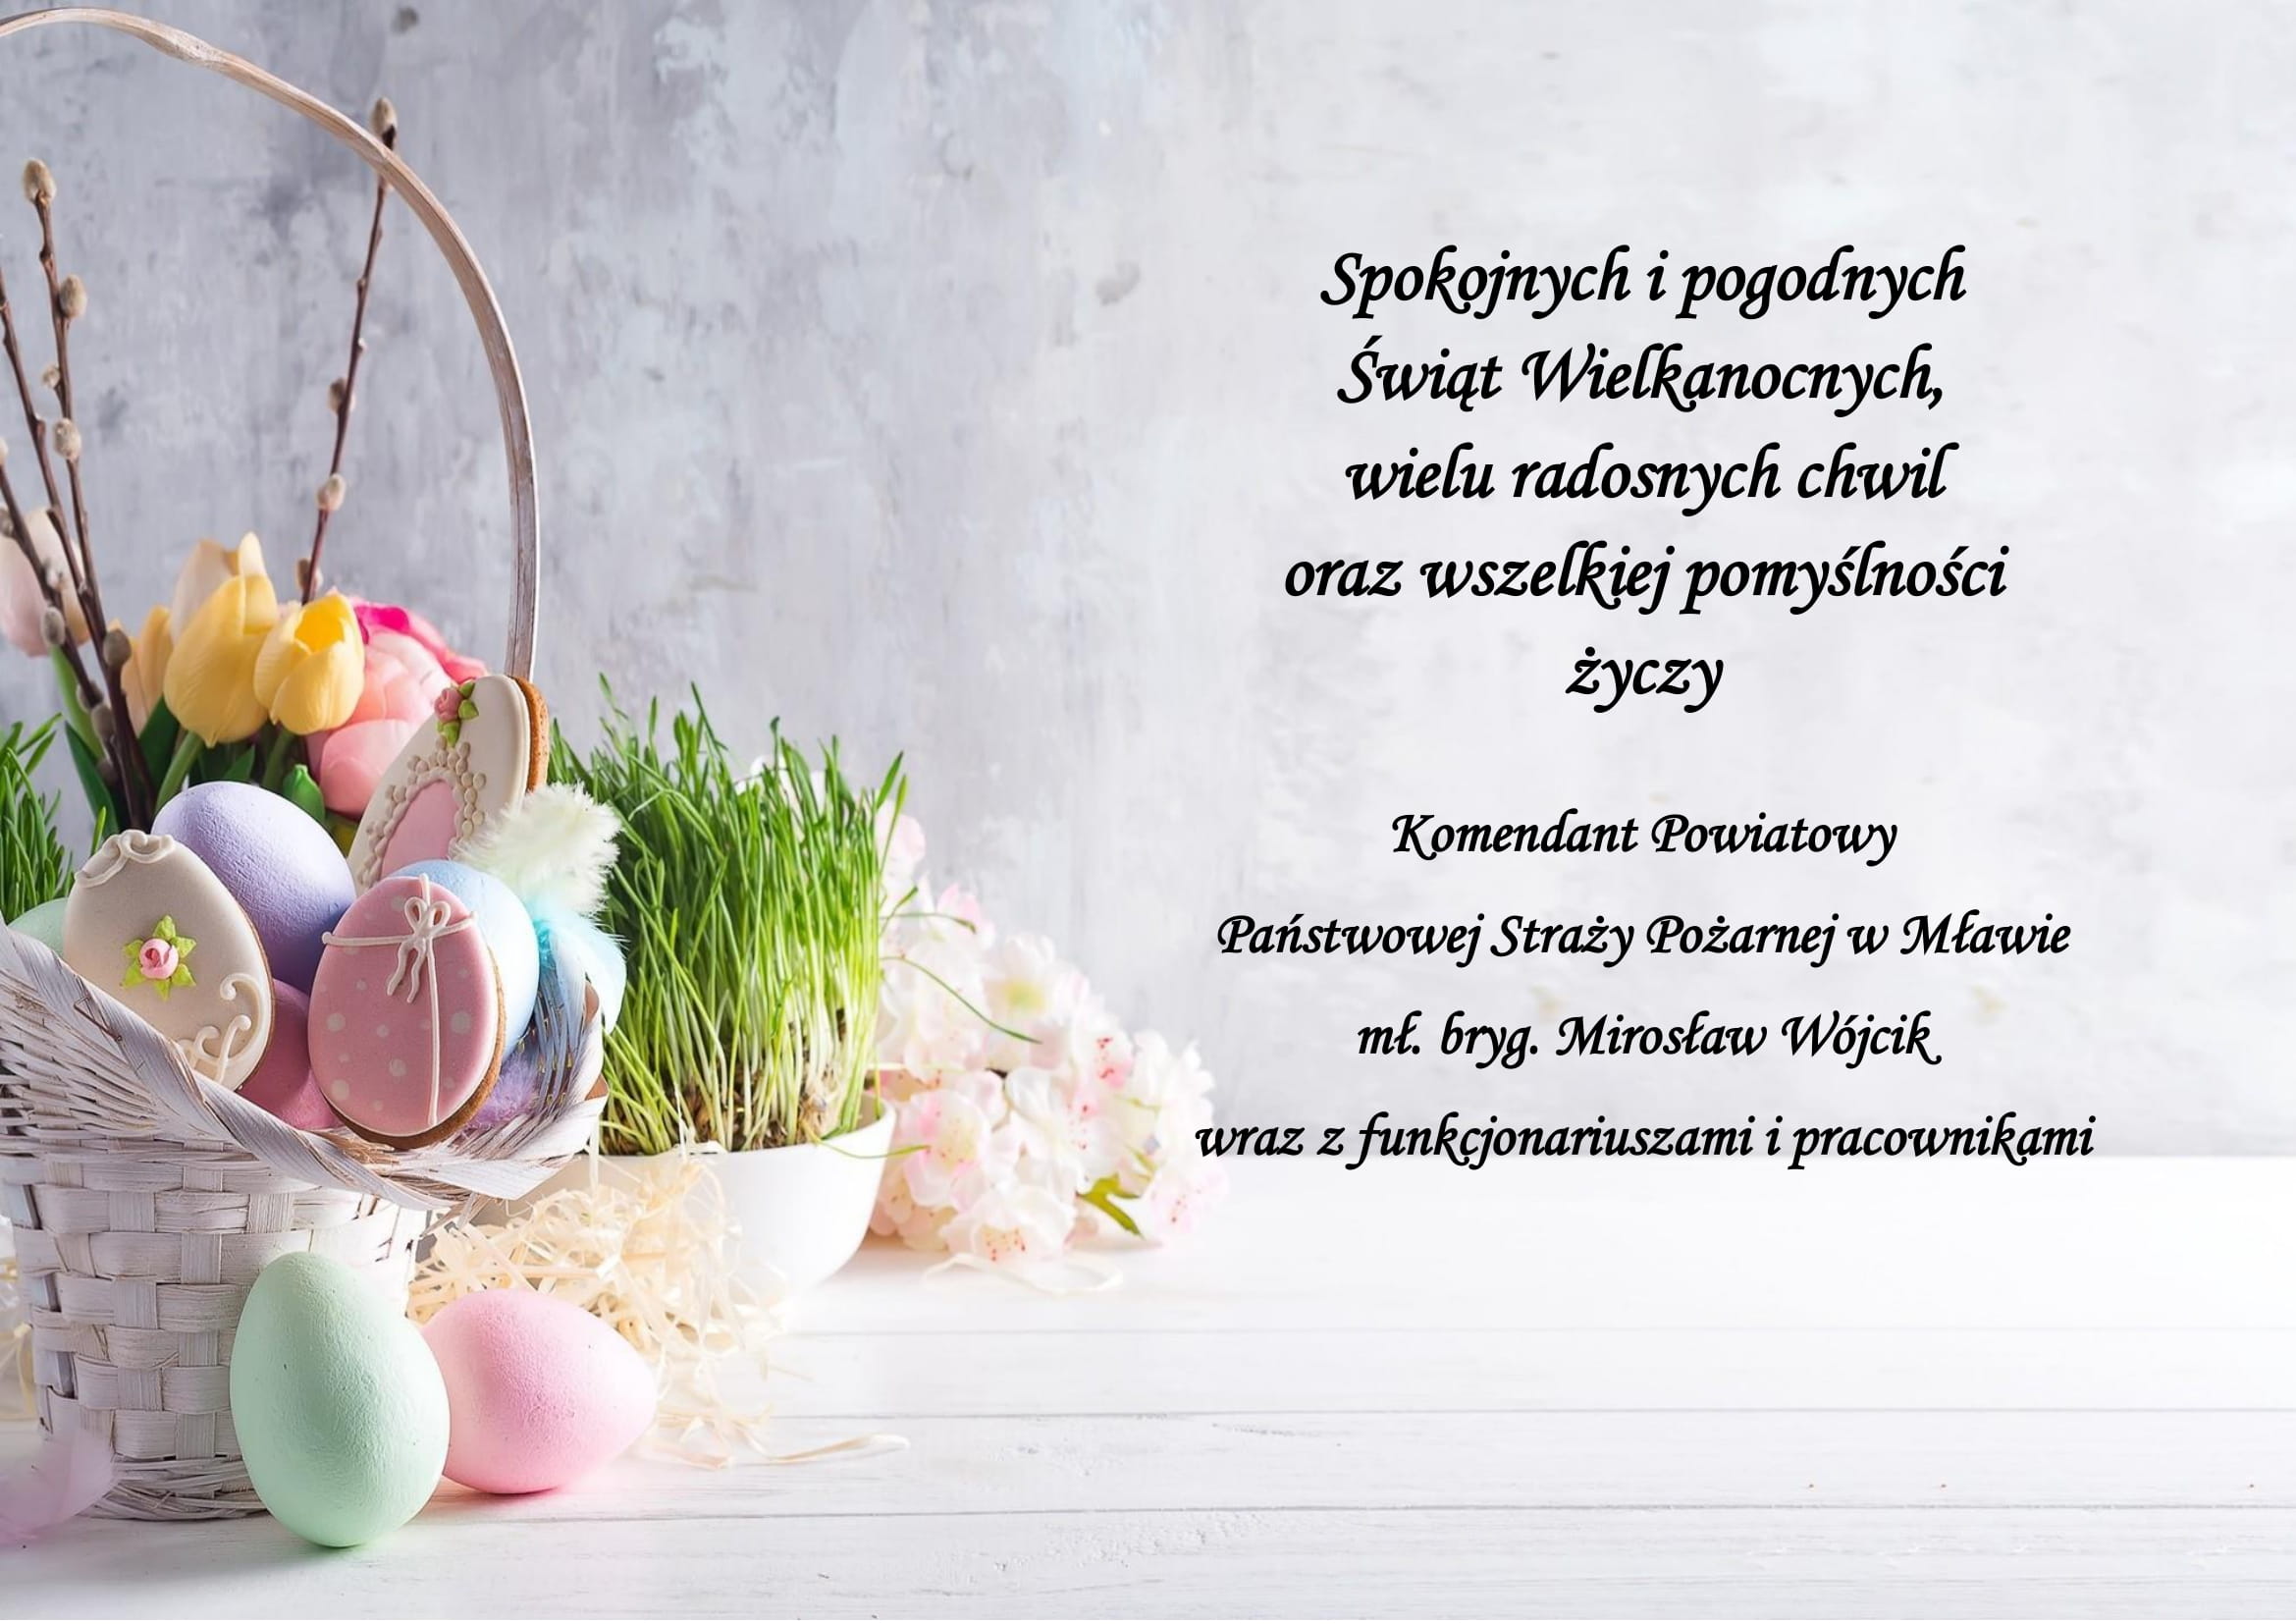 Życzenia Wielkanocne Komendanta Powiatowego PSP w Mławie